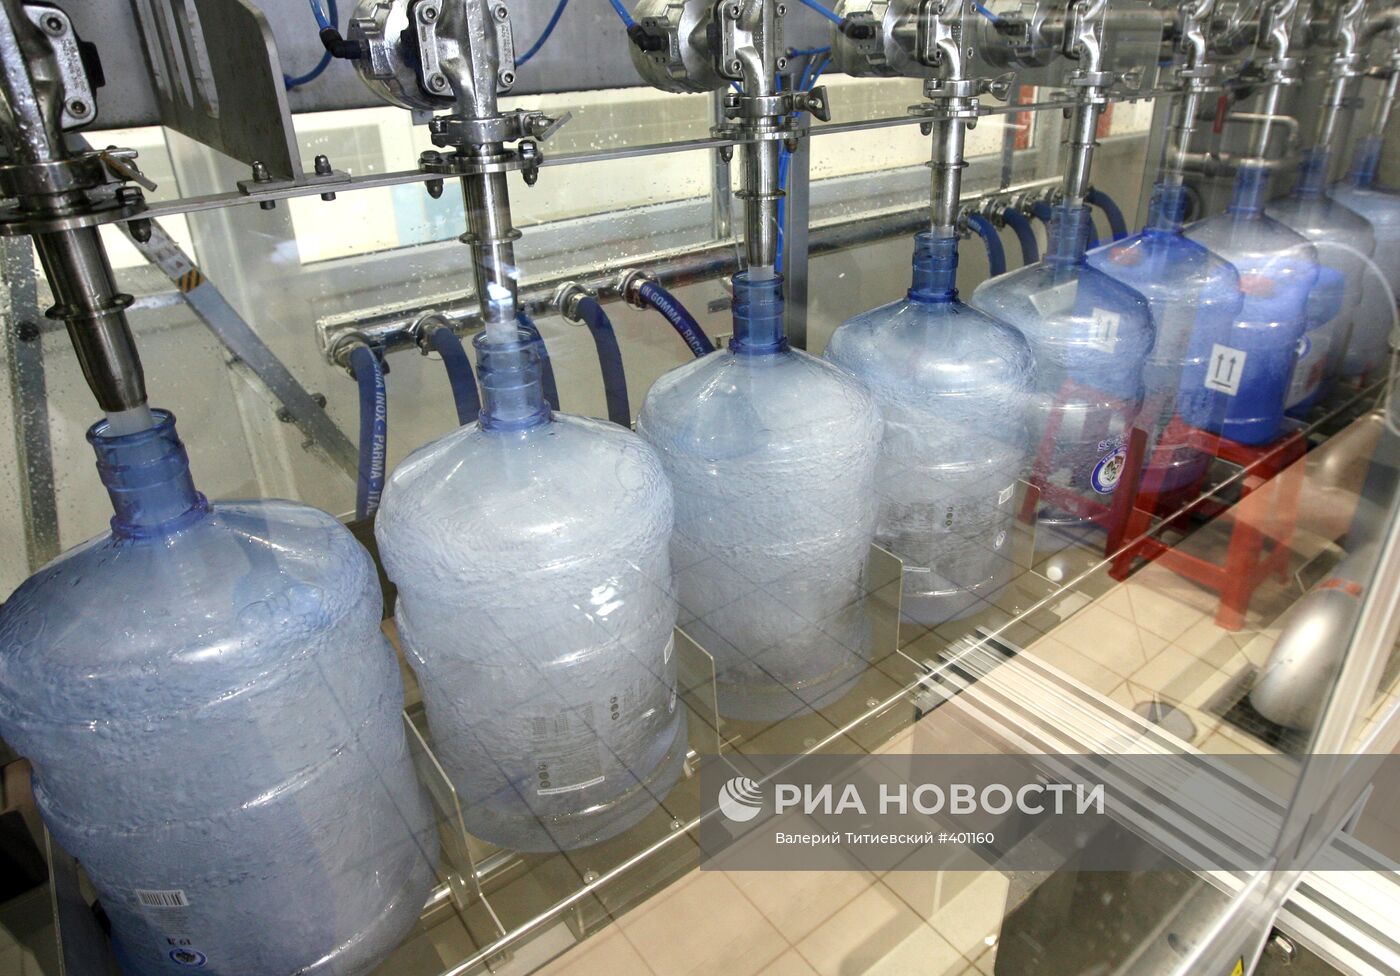 Работа компании "Чистая вода" в Новосибирске